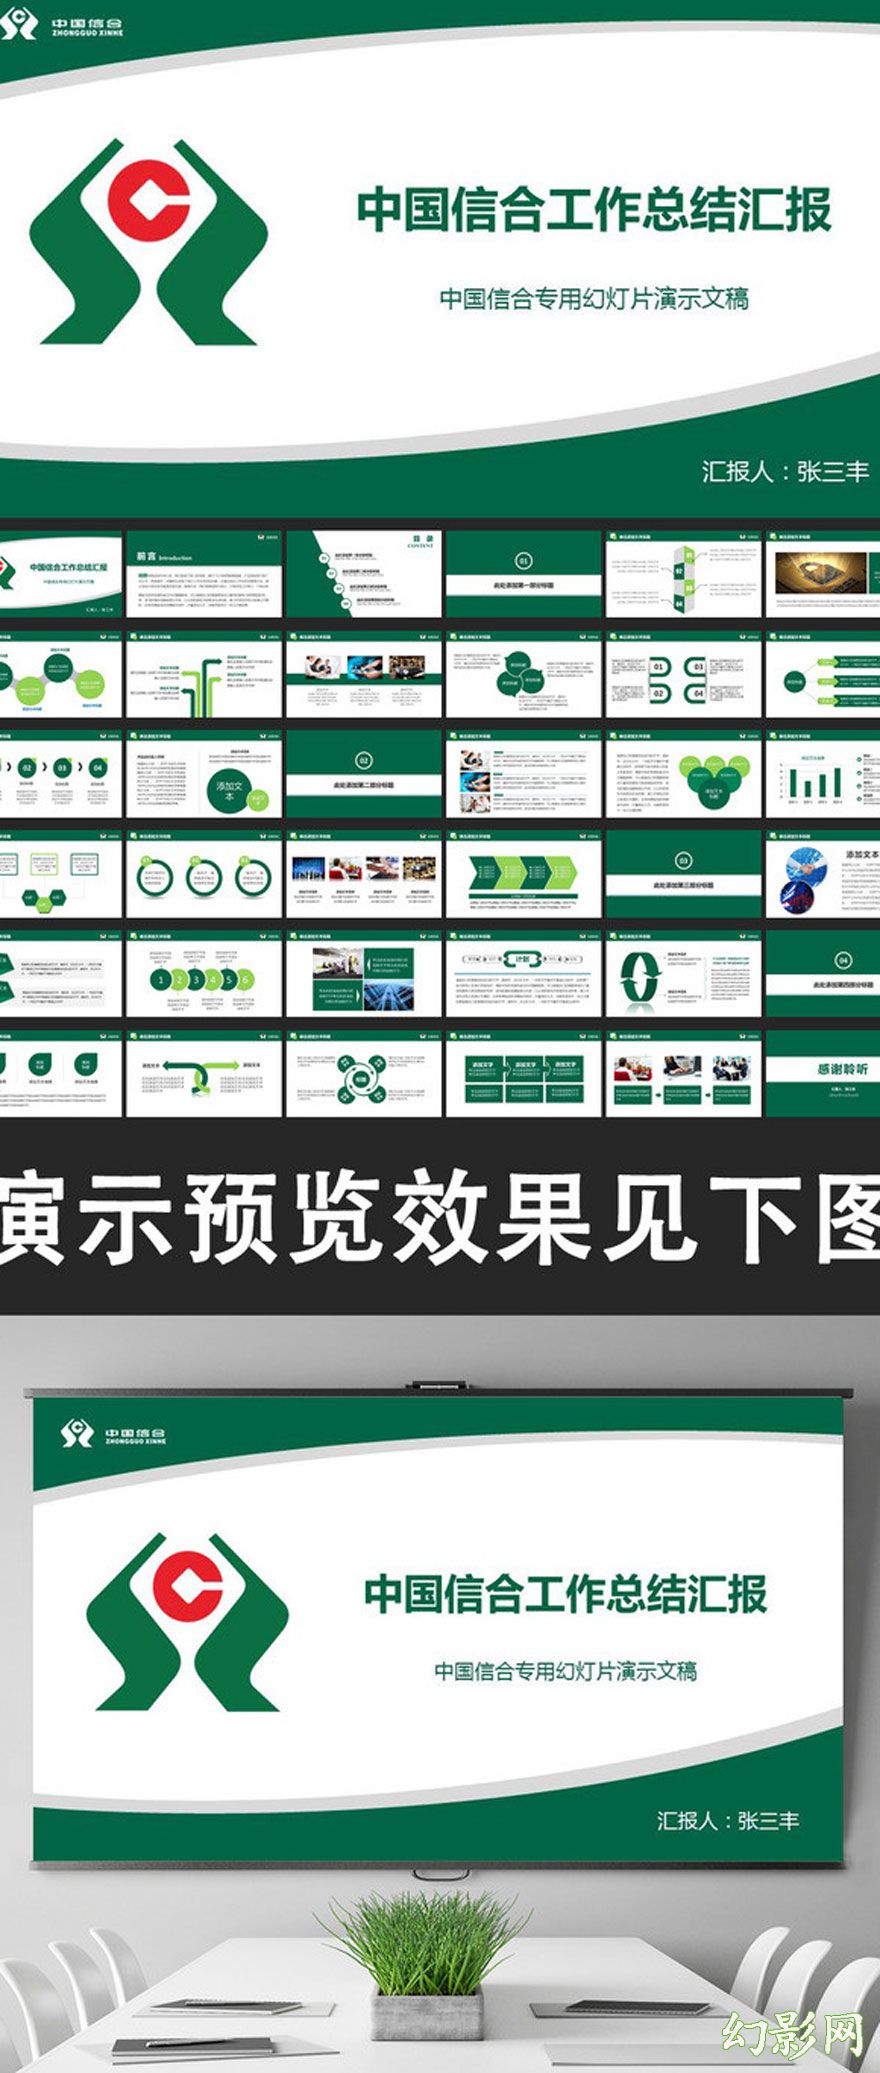 中国信用合作社宣传PPT模板